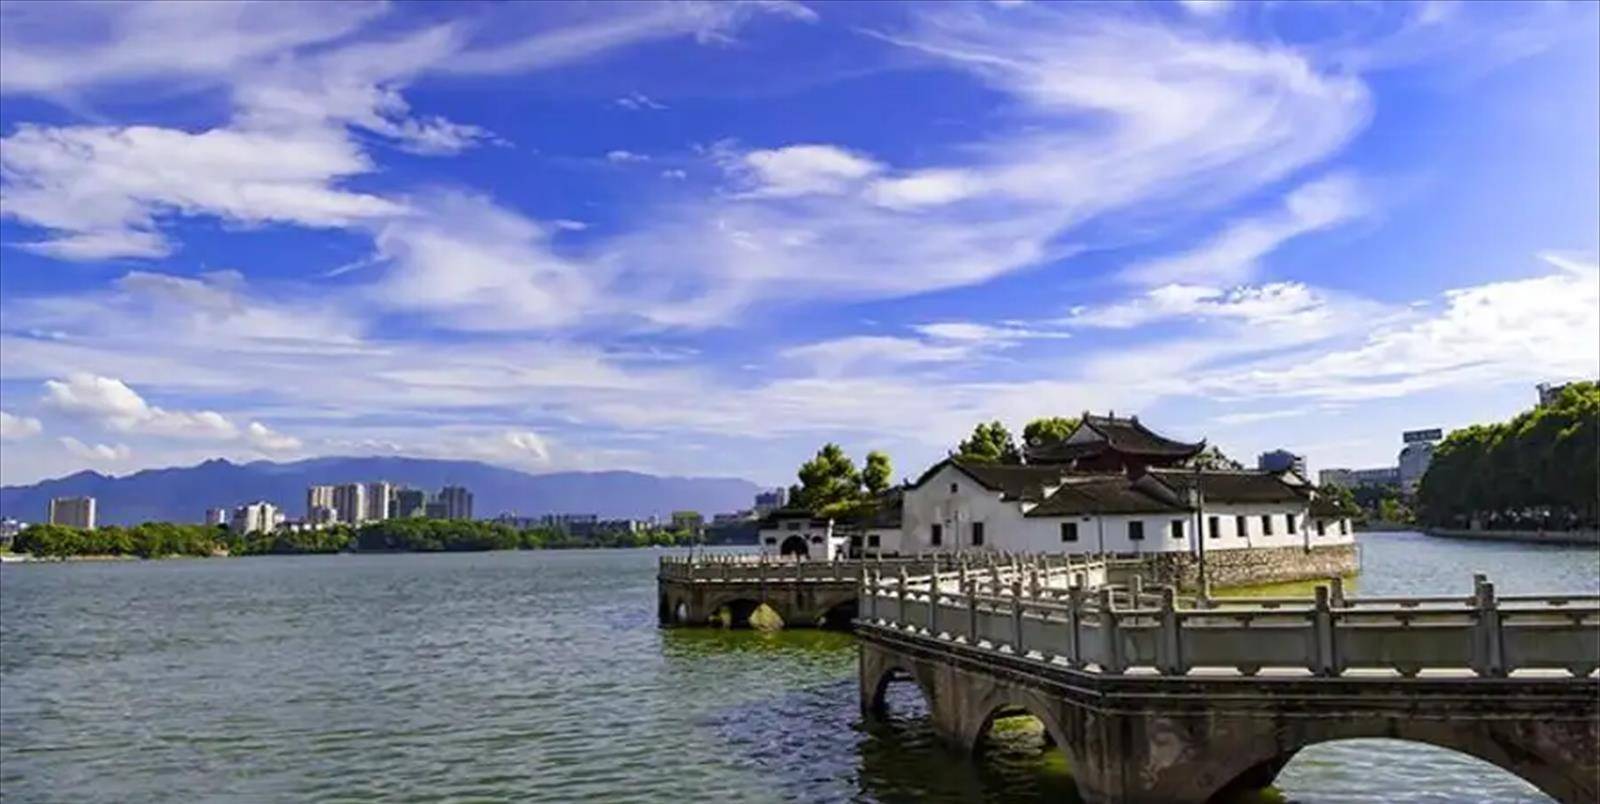 九江甘棠湖,千年美景烟水亭,镶嵌在繁华闹市的璀璨明珠